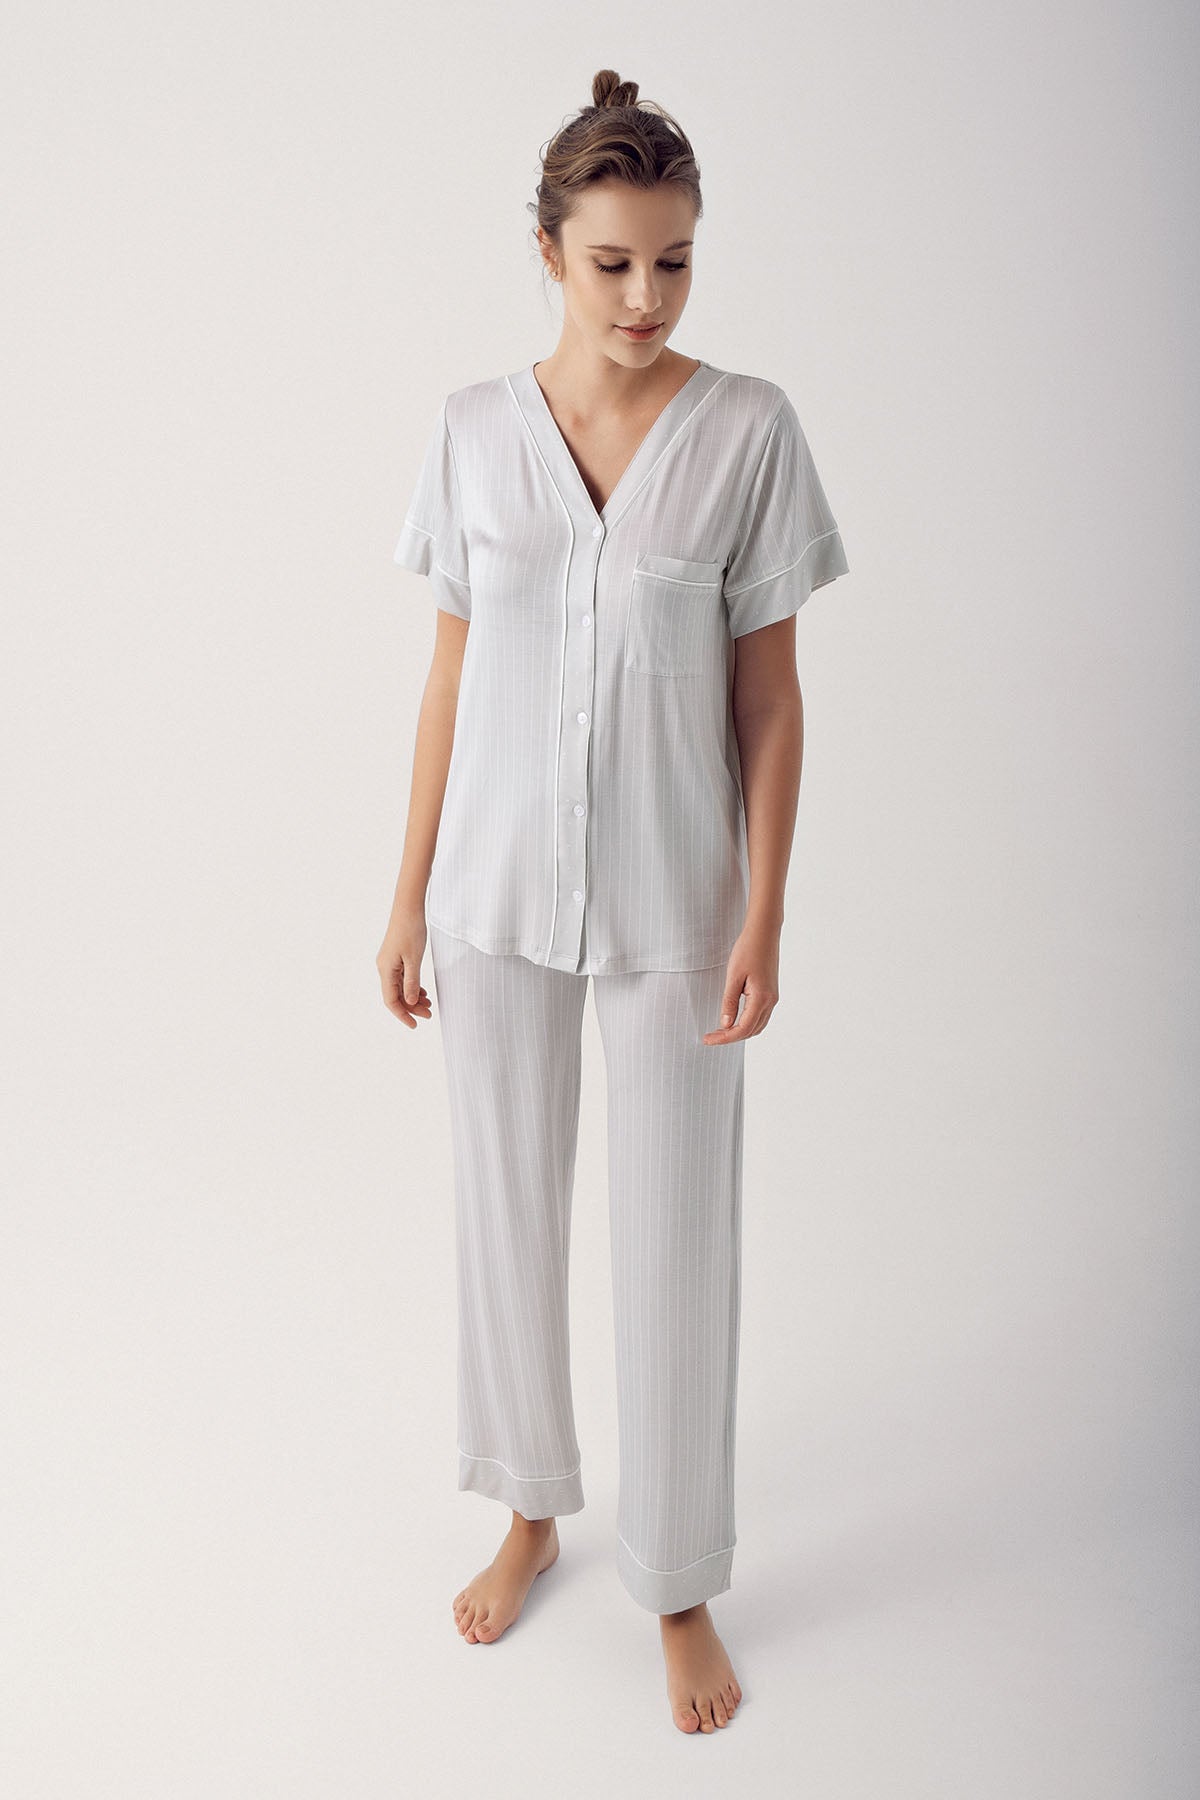 Shopymommy 14205 Striped V-Neck Maternity & Nursing Pajamas Grey